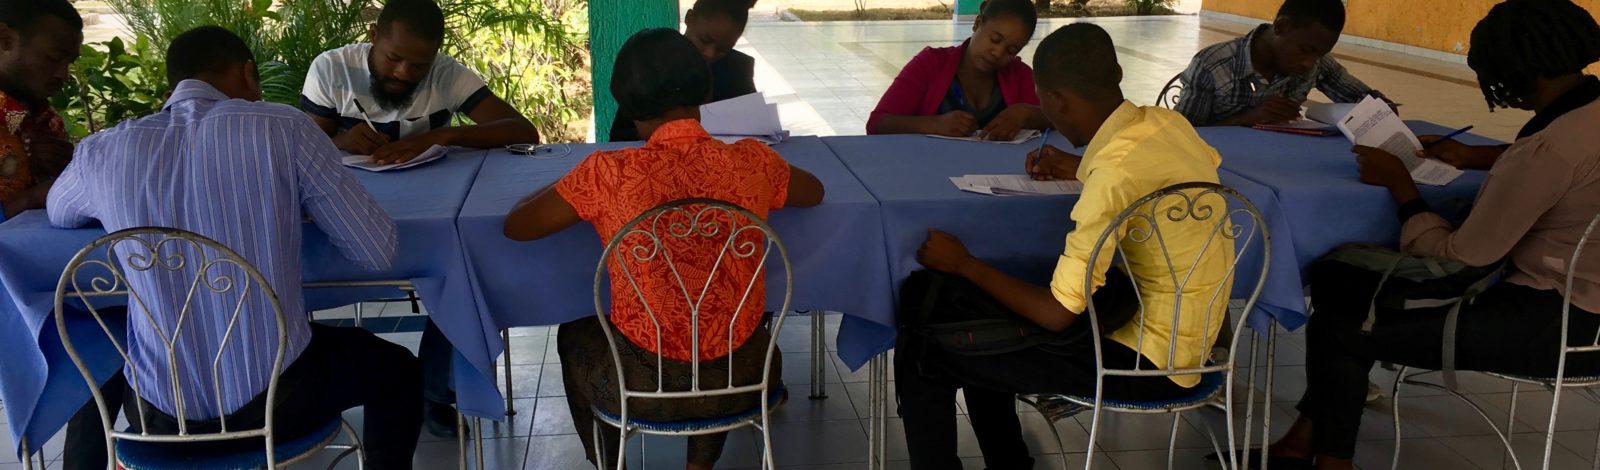 Jeunes et participation citoyenne en Haïti 1